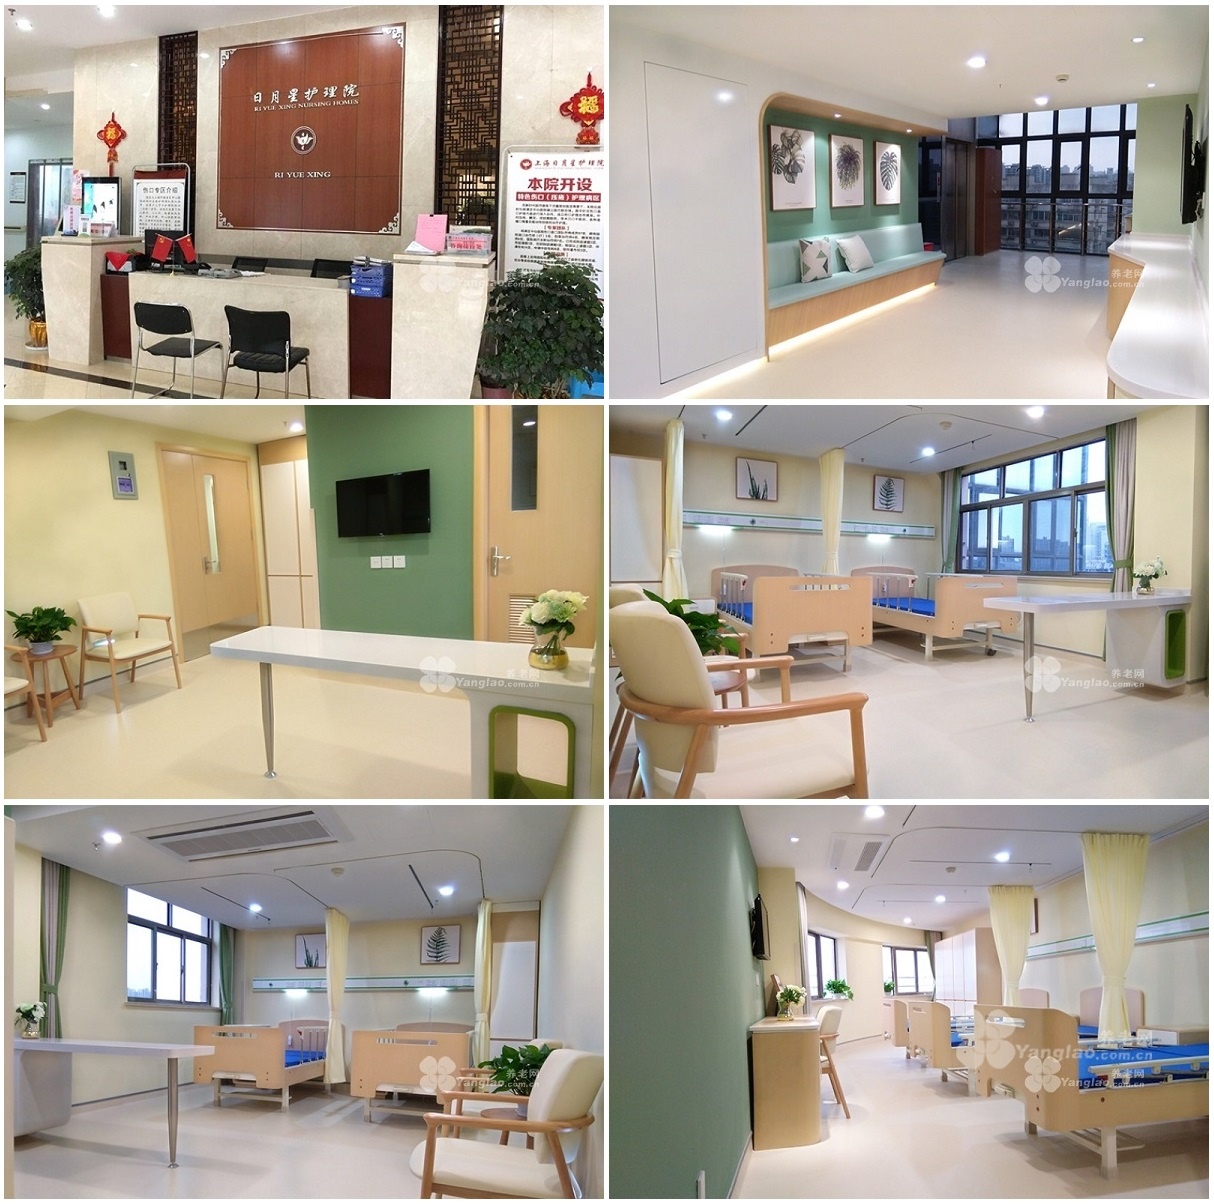 2、上海养老院的收费标准是多少？ 